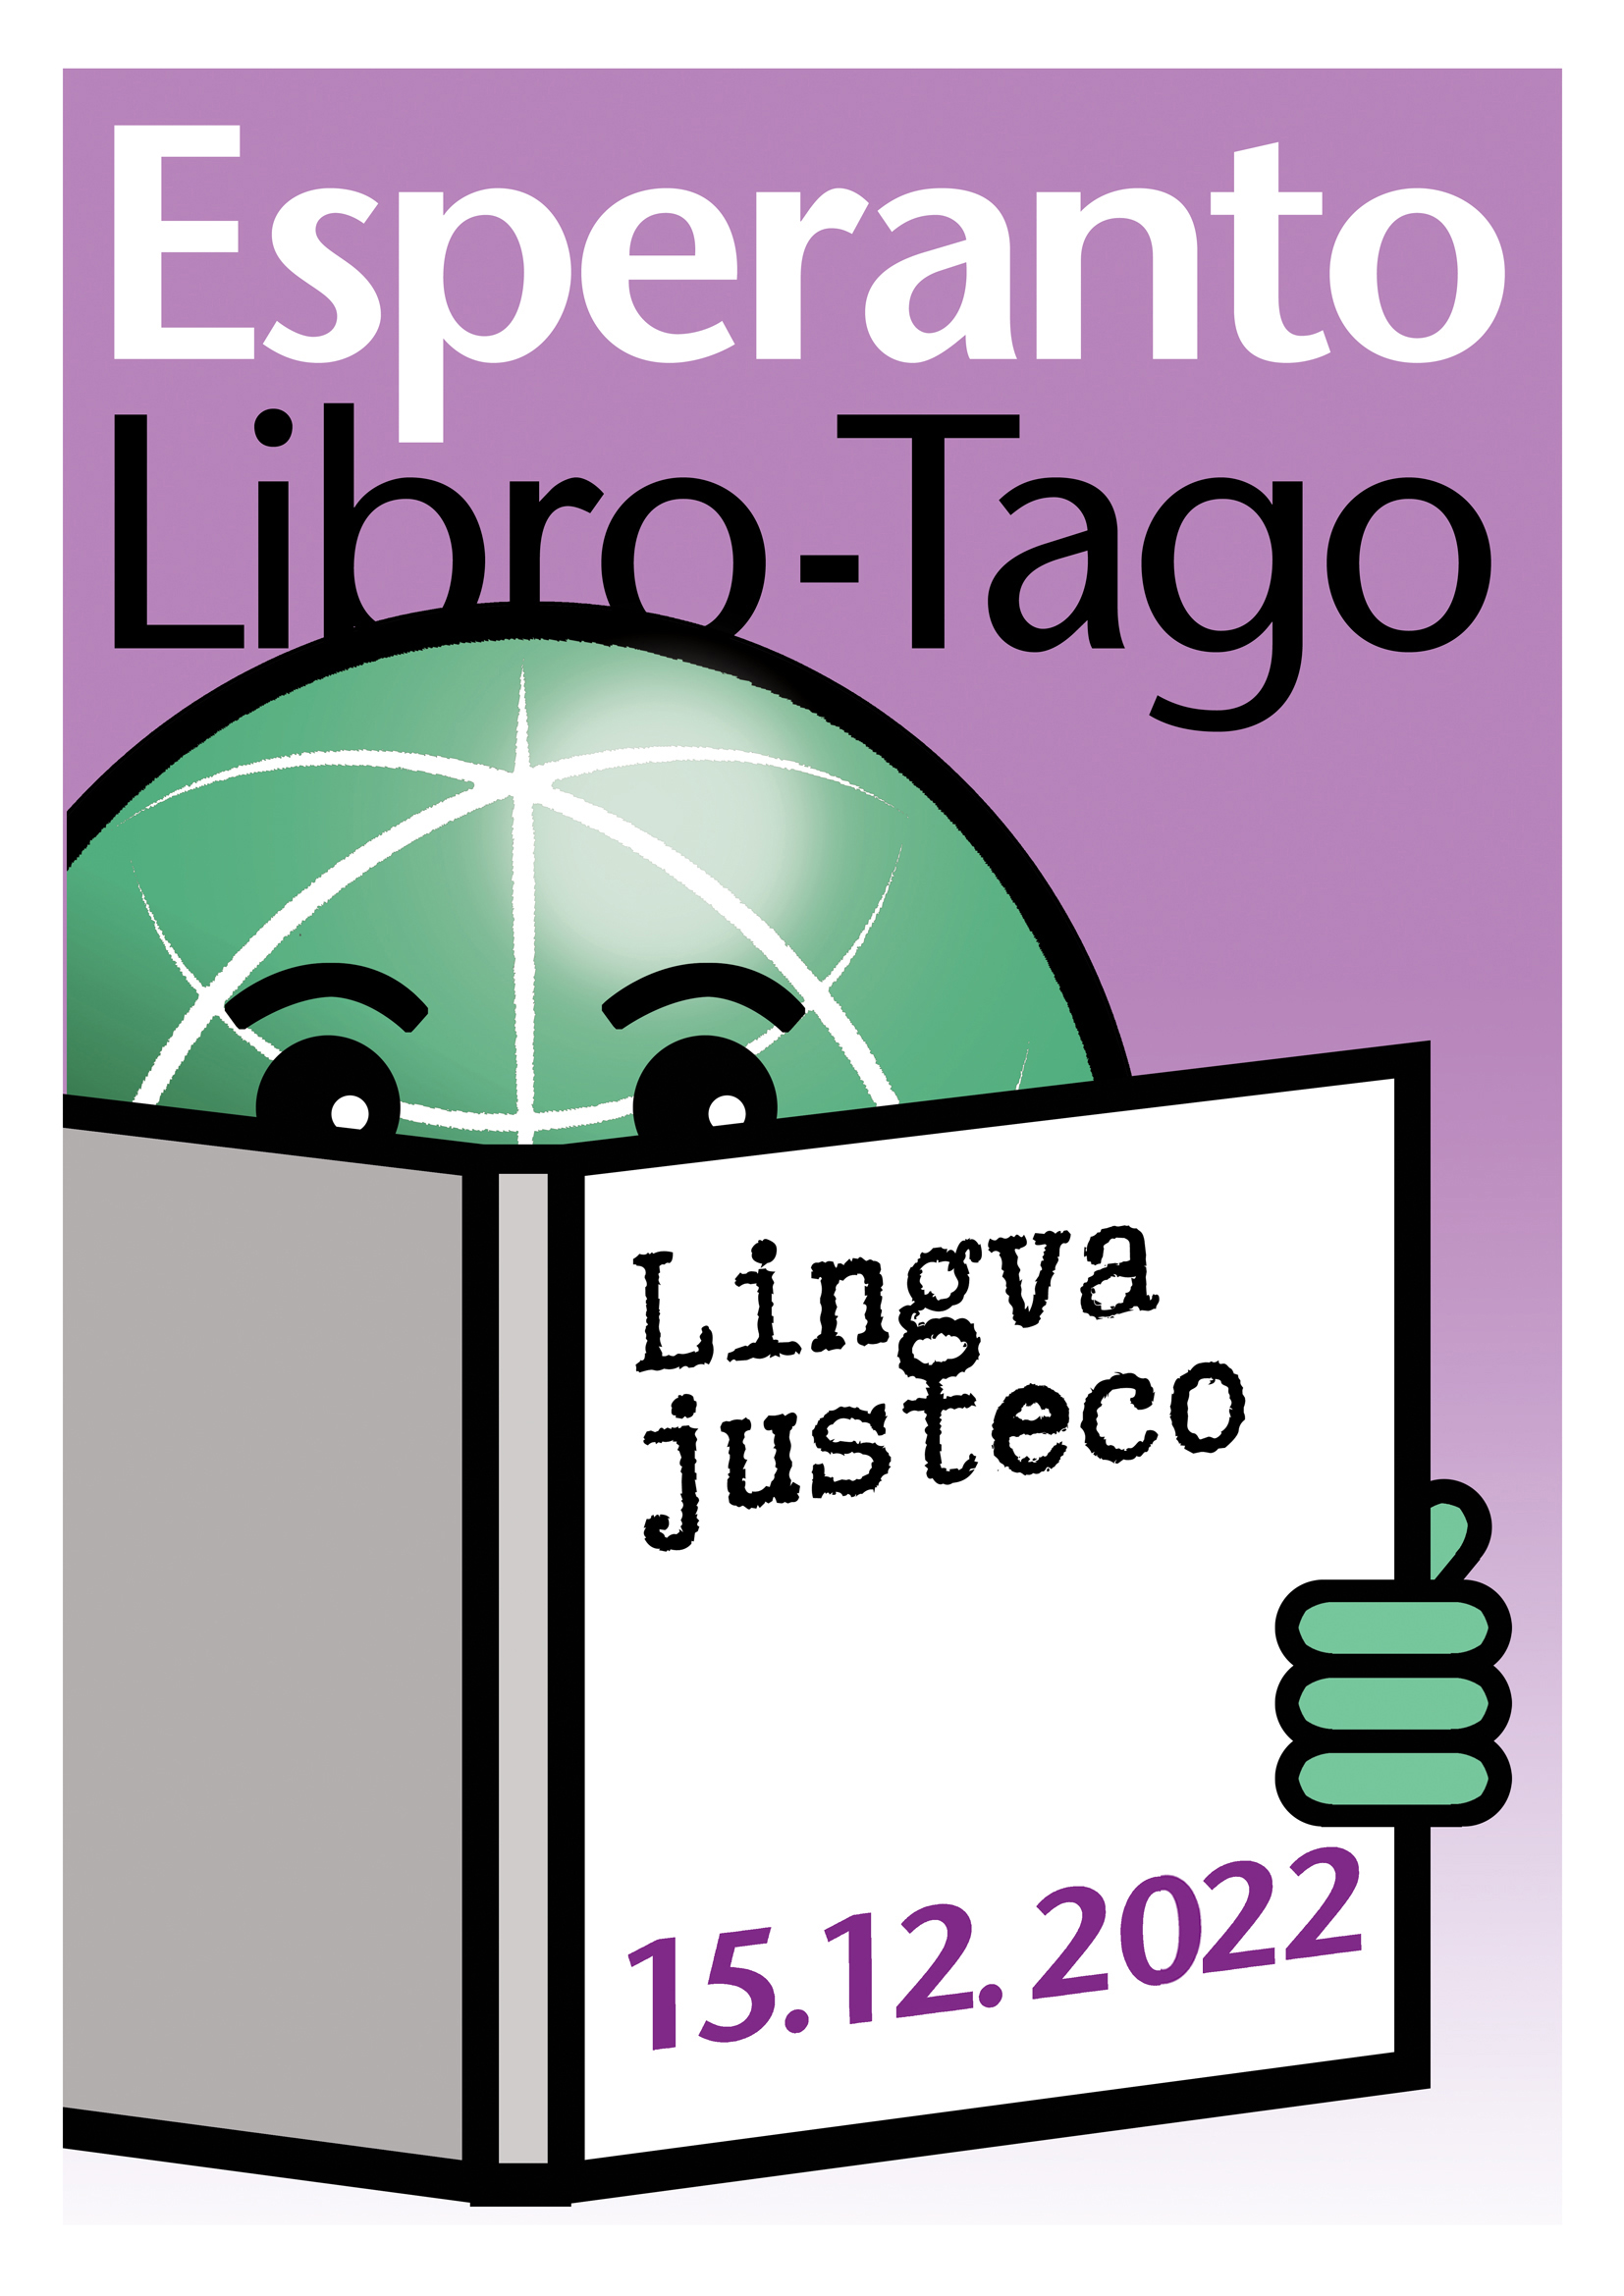 ZAMENHOF-TAGO / Esperanta Librotago 2022 - eo - granda, presebla, afiŝa versio - klaku ĉi tien, por malfermi ĝin en nova fenestro